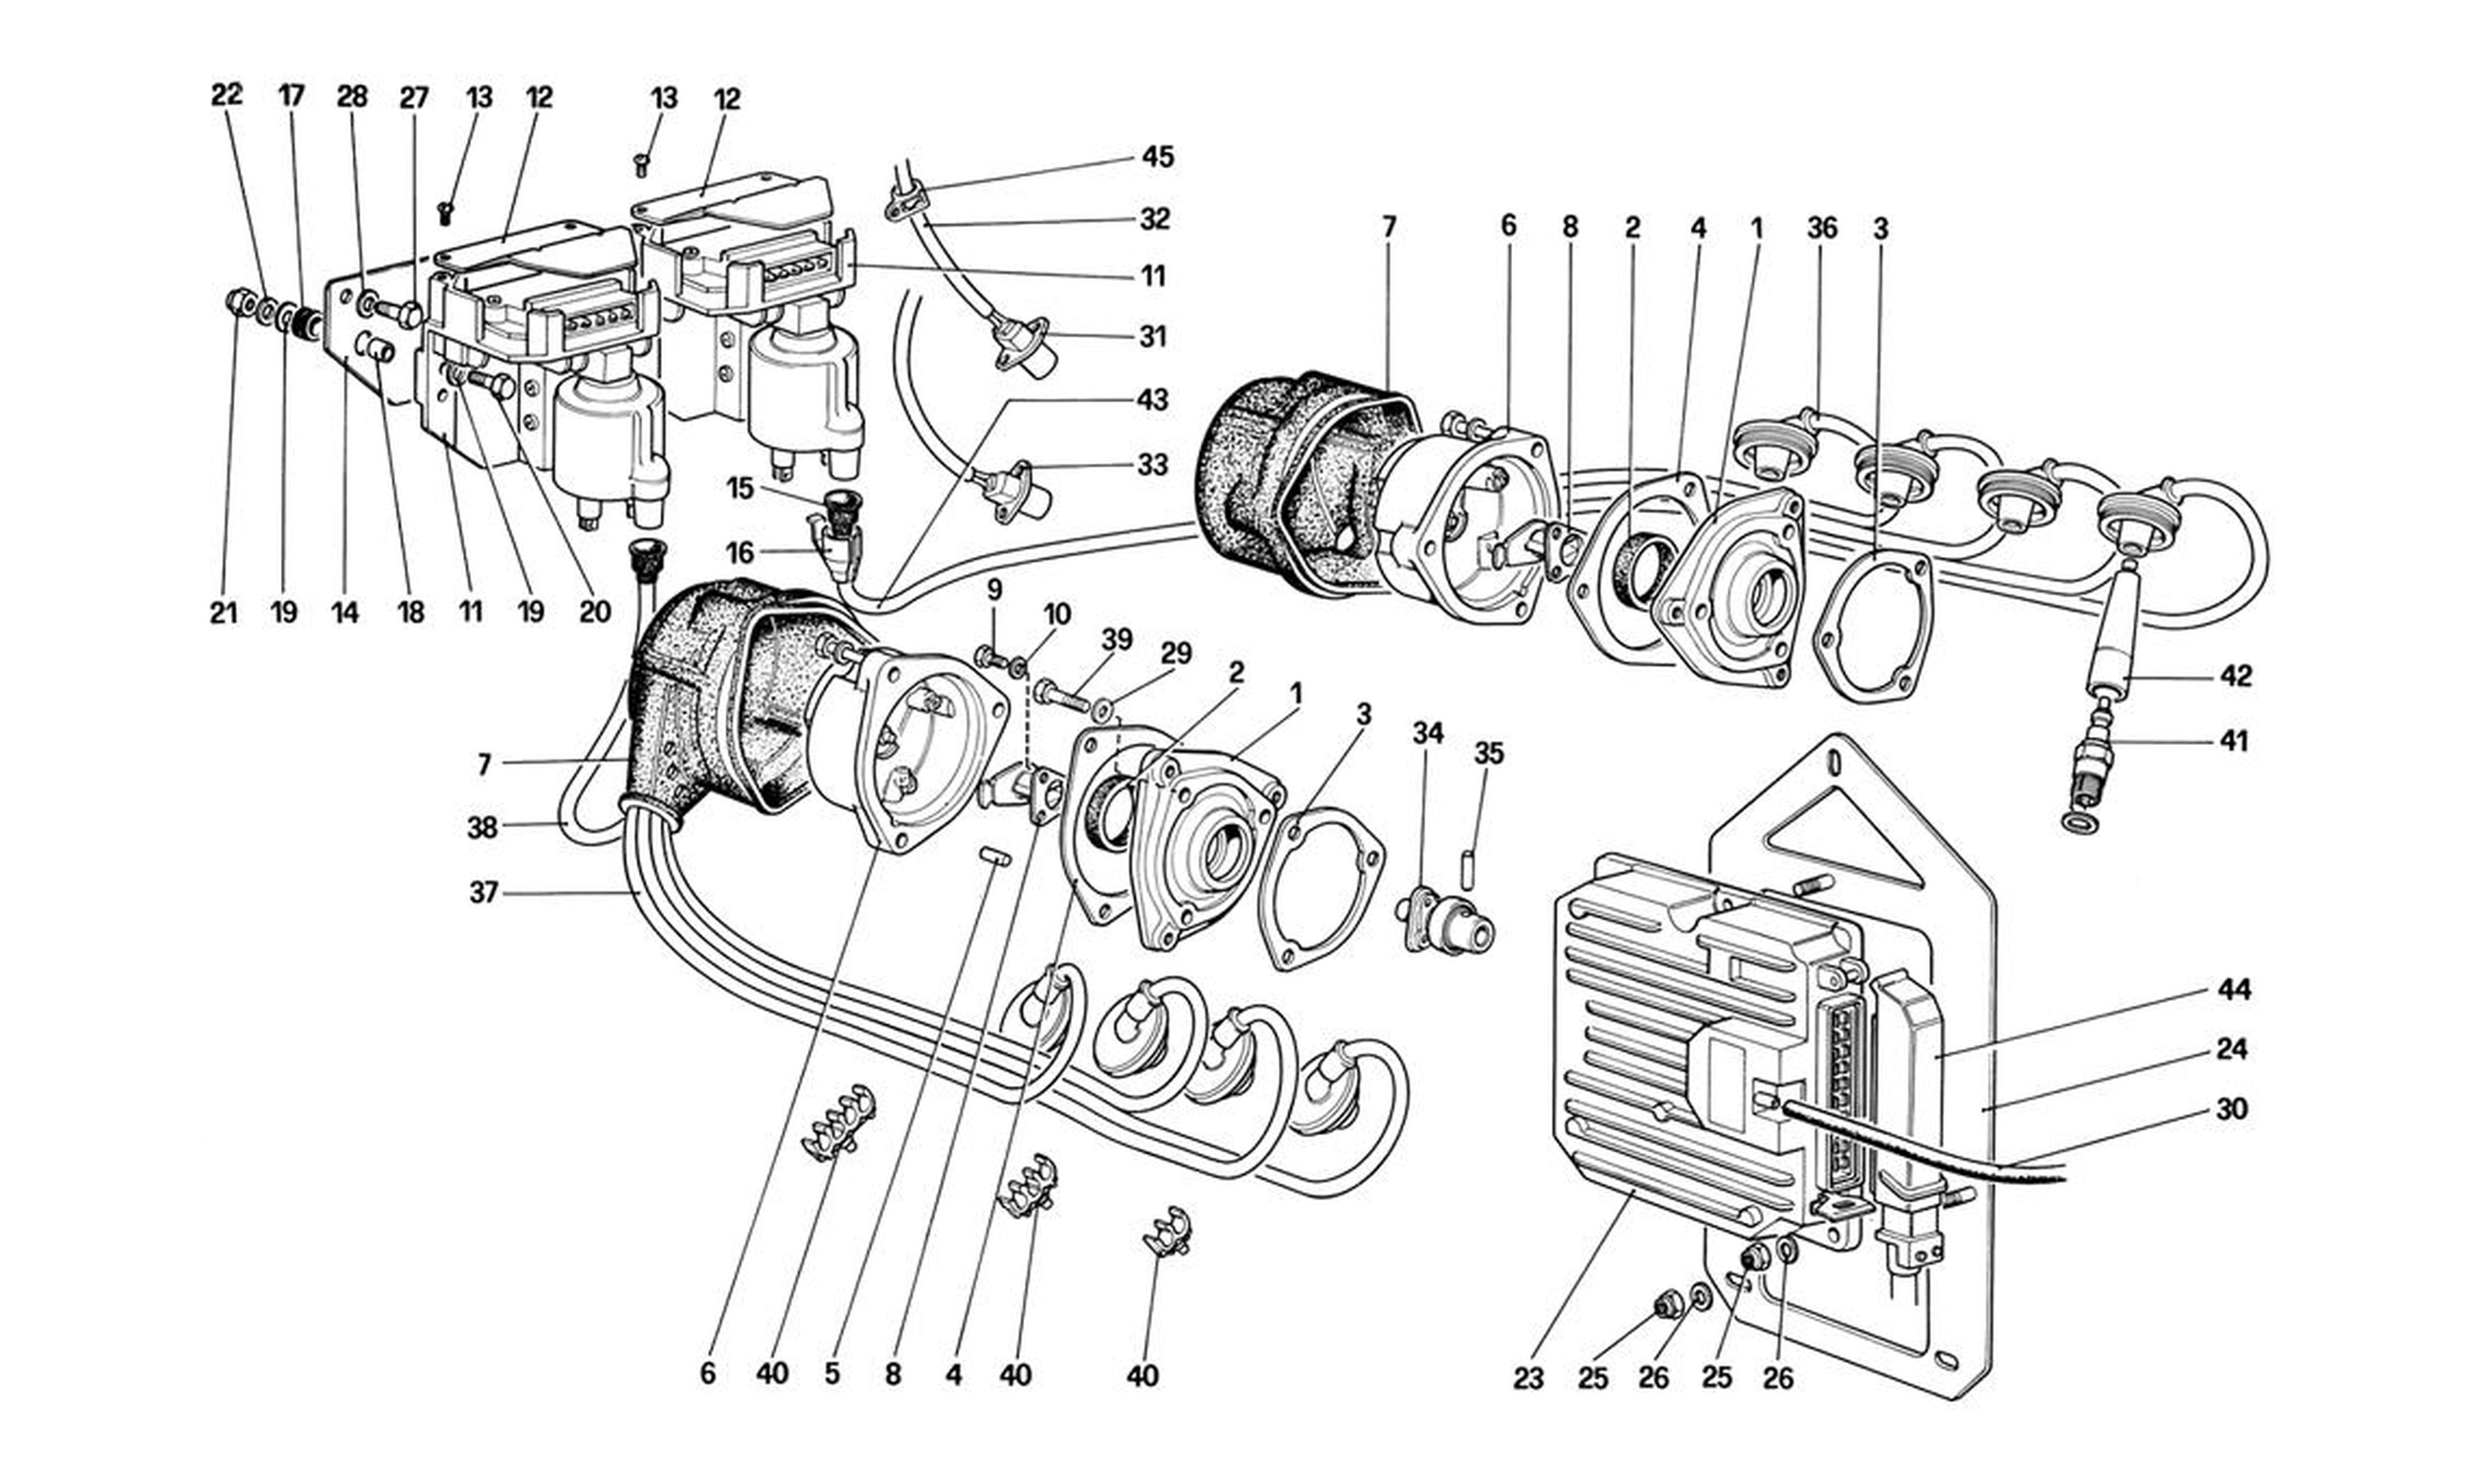 Schematic: Engine Ignition